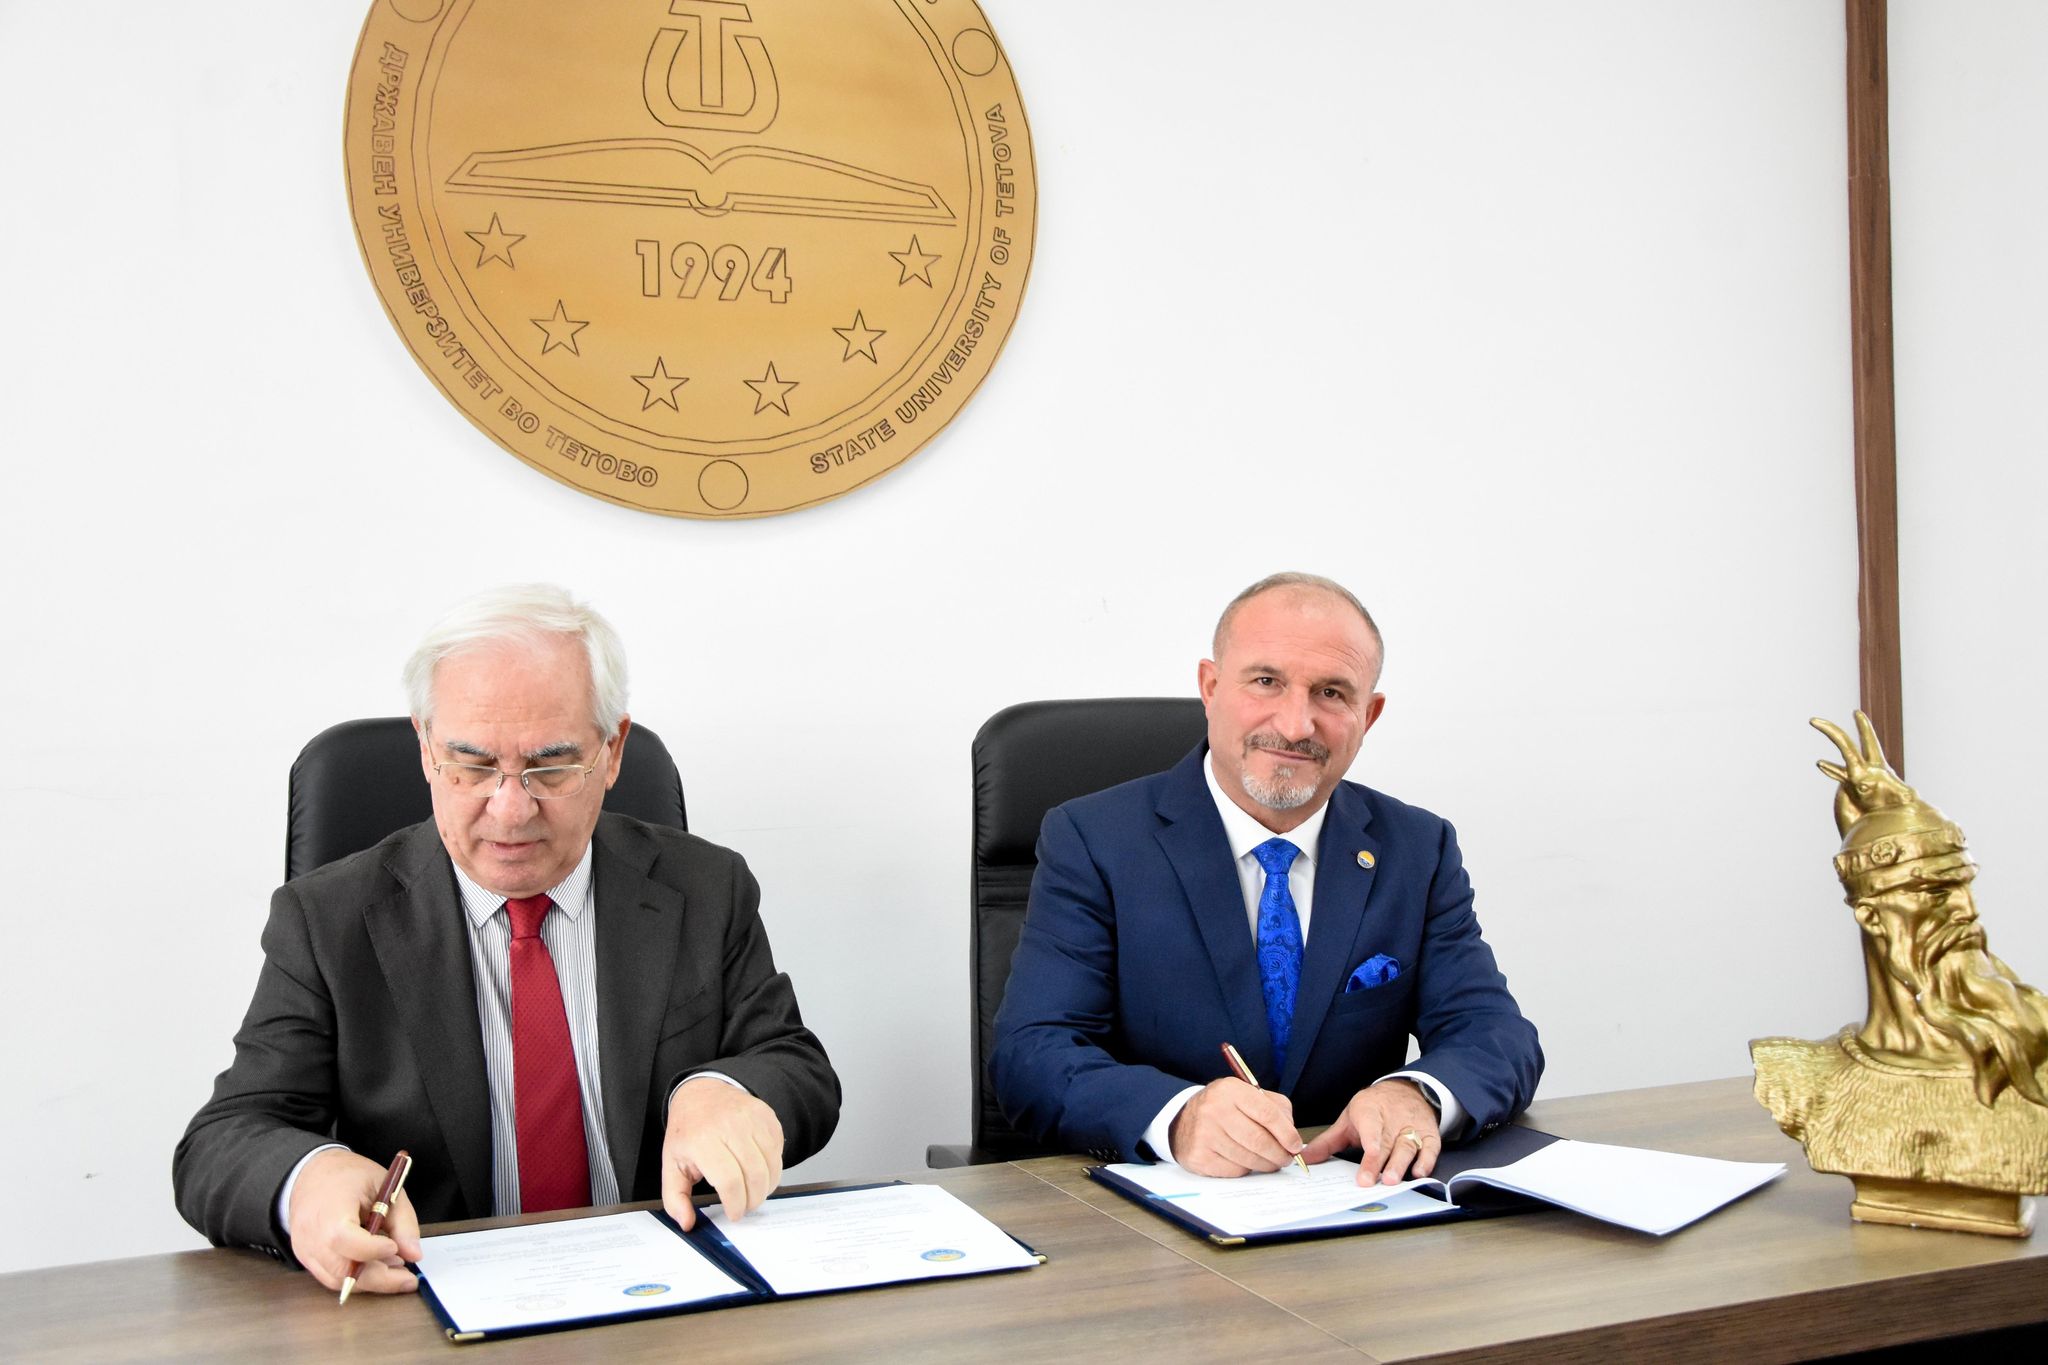 Universiteti i Tetovës dhe Akademia e Shkencave e Shqipërisë nënshkruan Memorandum bashkëpunimi